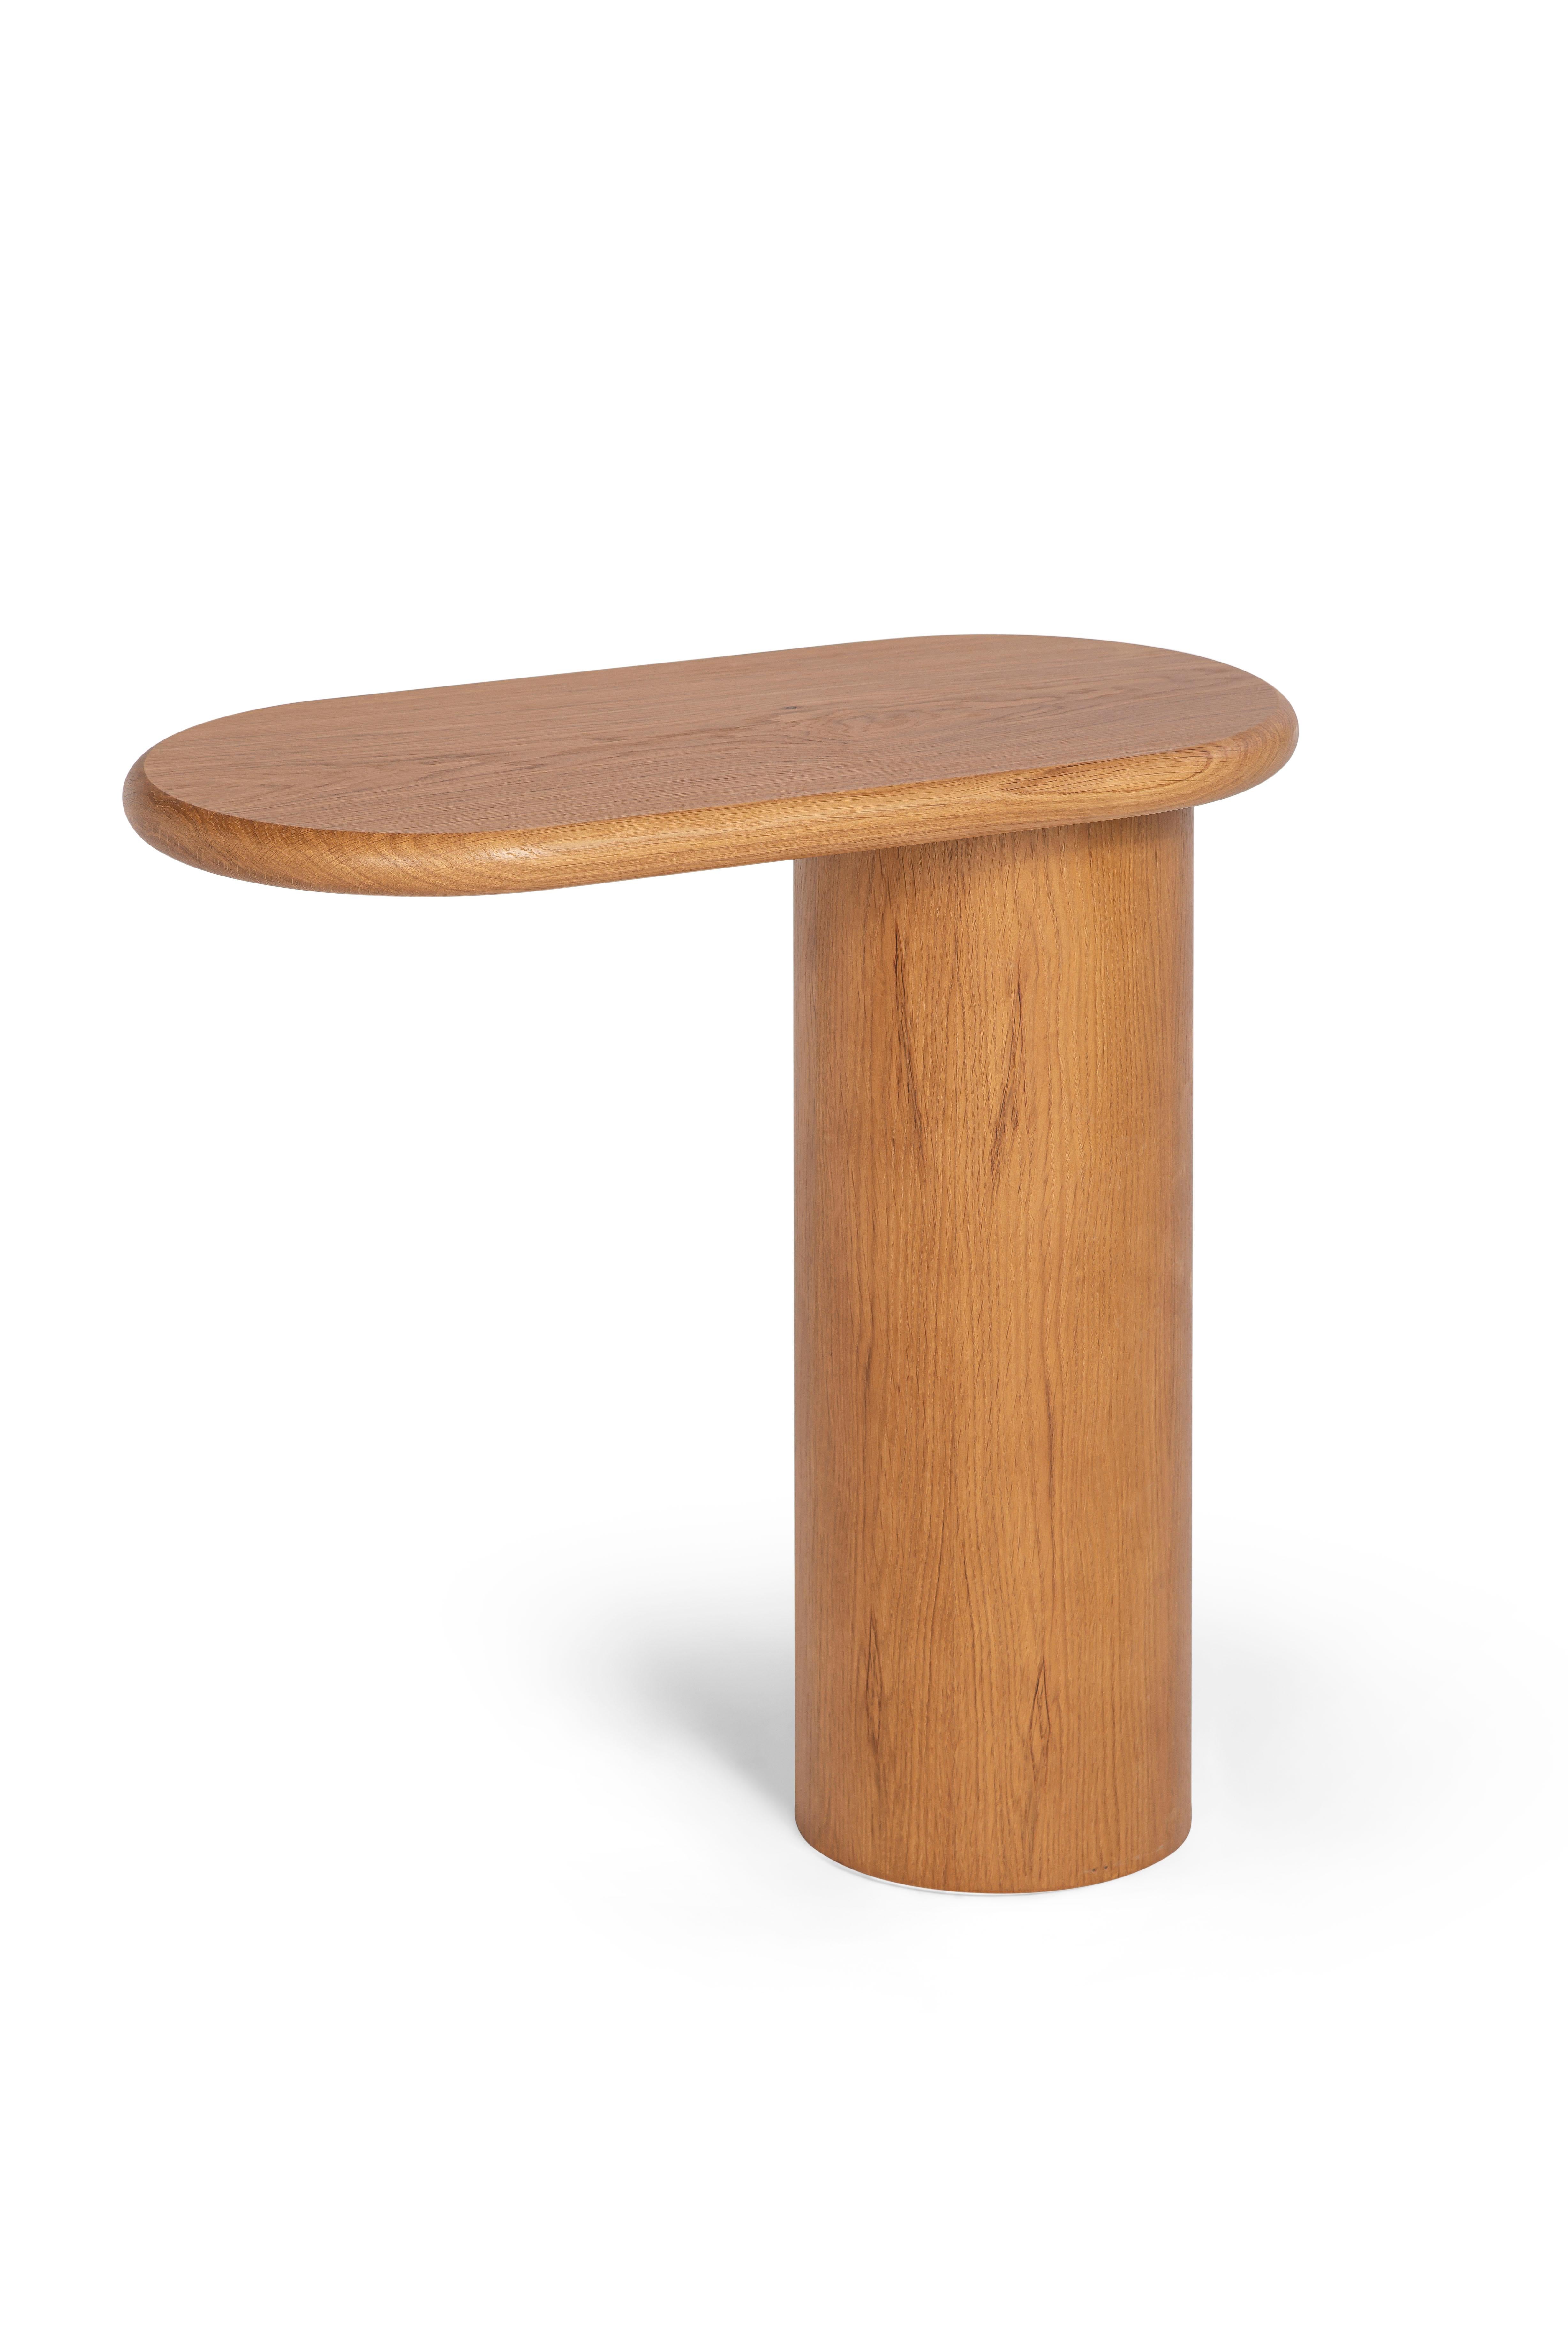 Italian 21st Century Matteo Zorzenoni Cantilever L Coffee Table Wood For Sale